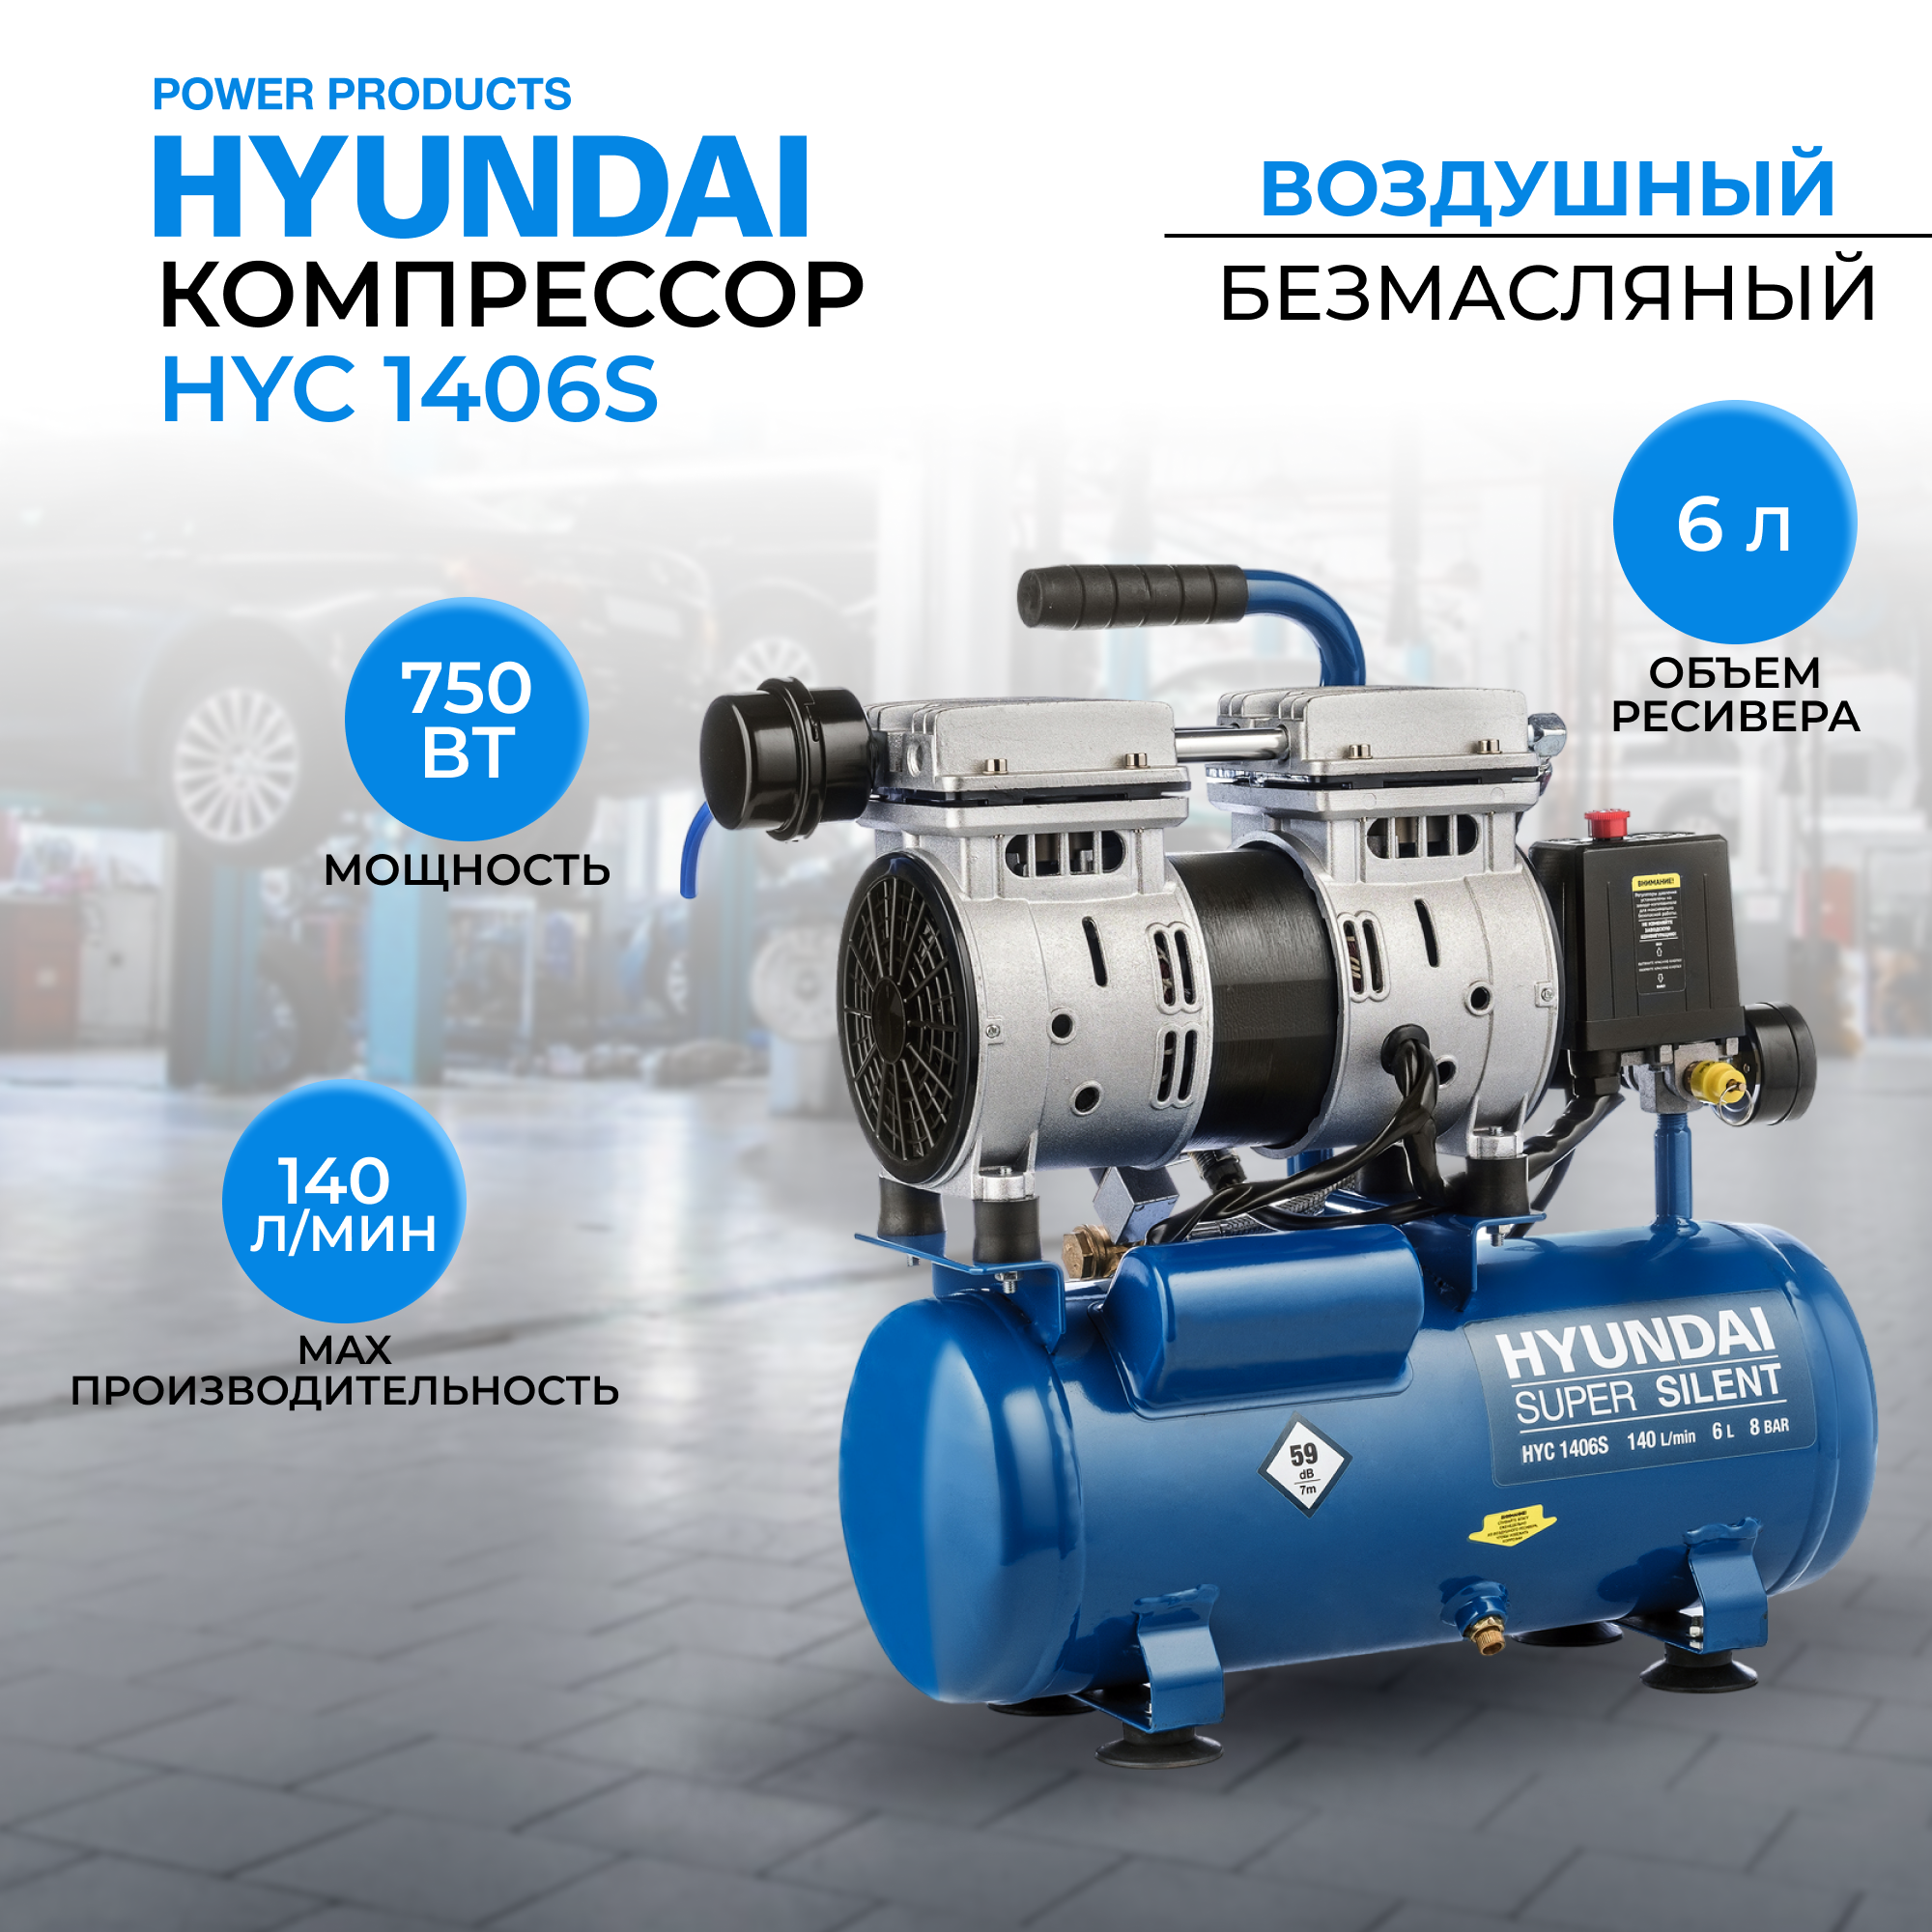 Воздушный поршневой компрессор Hyundai HYC 1406S безмасляный (140 л/мин, 750Вт, 8 бар) блок автоматики hyundai ats 10 380v для dhy 12000le 3 se 3